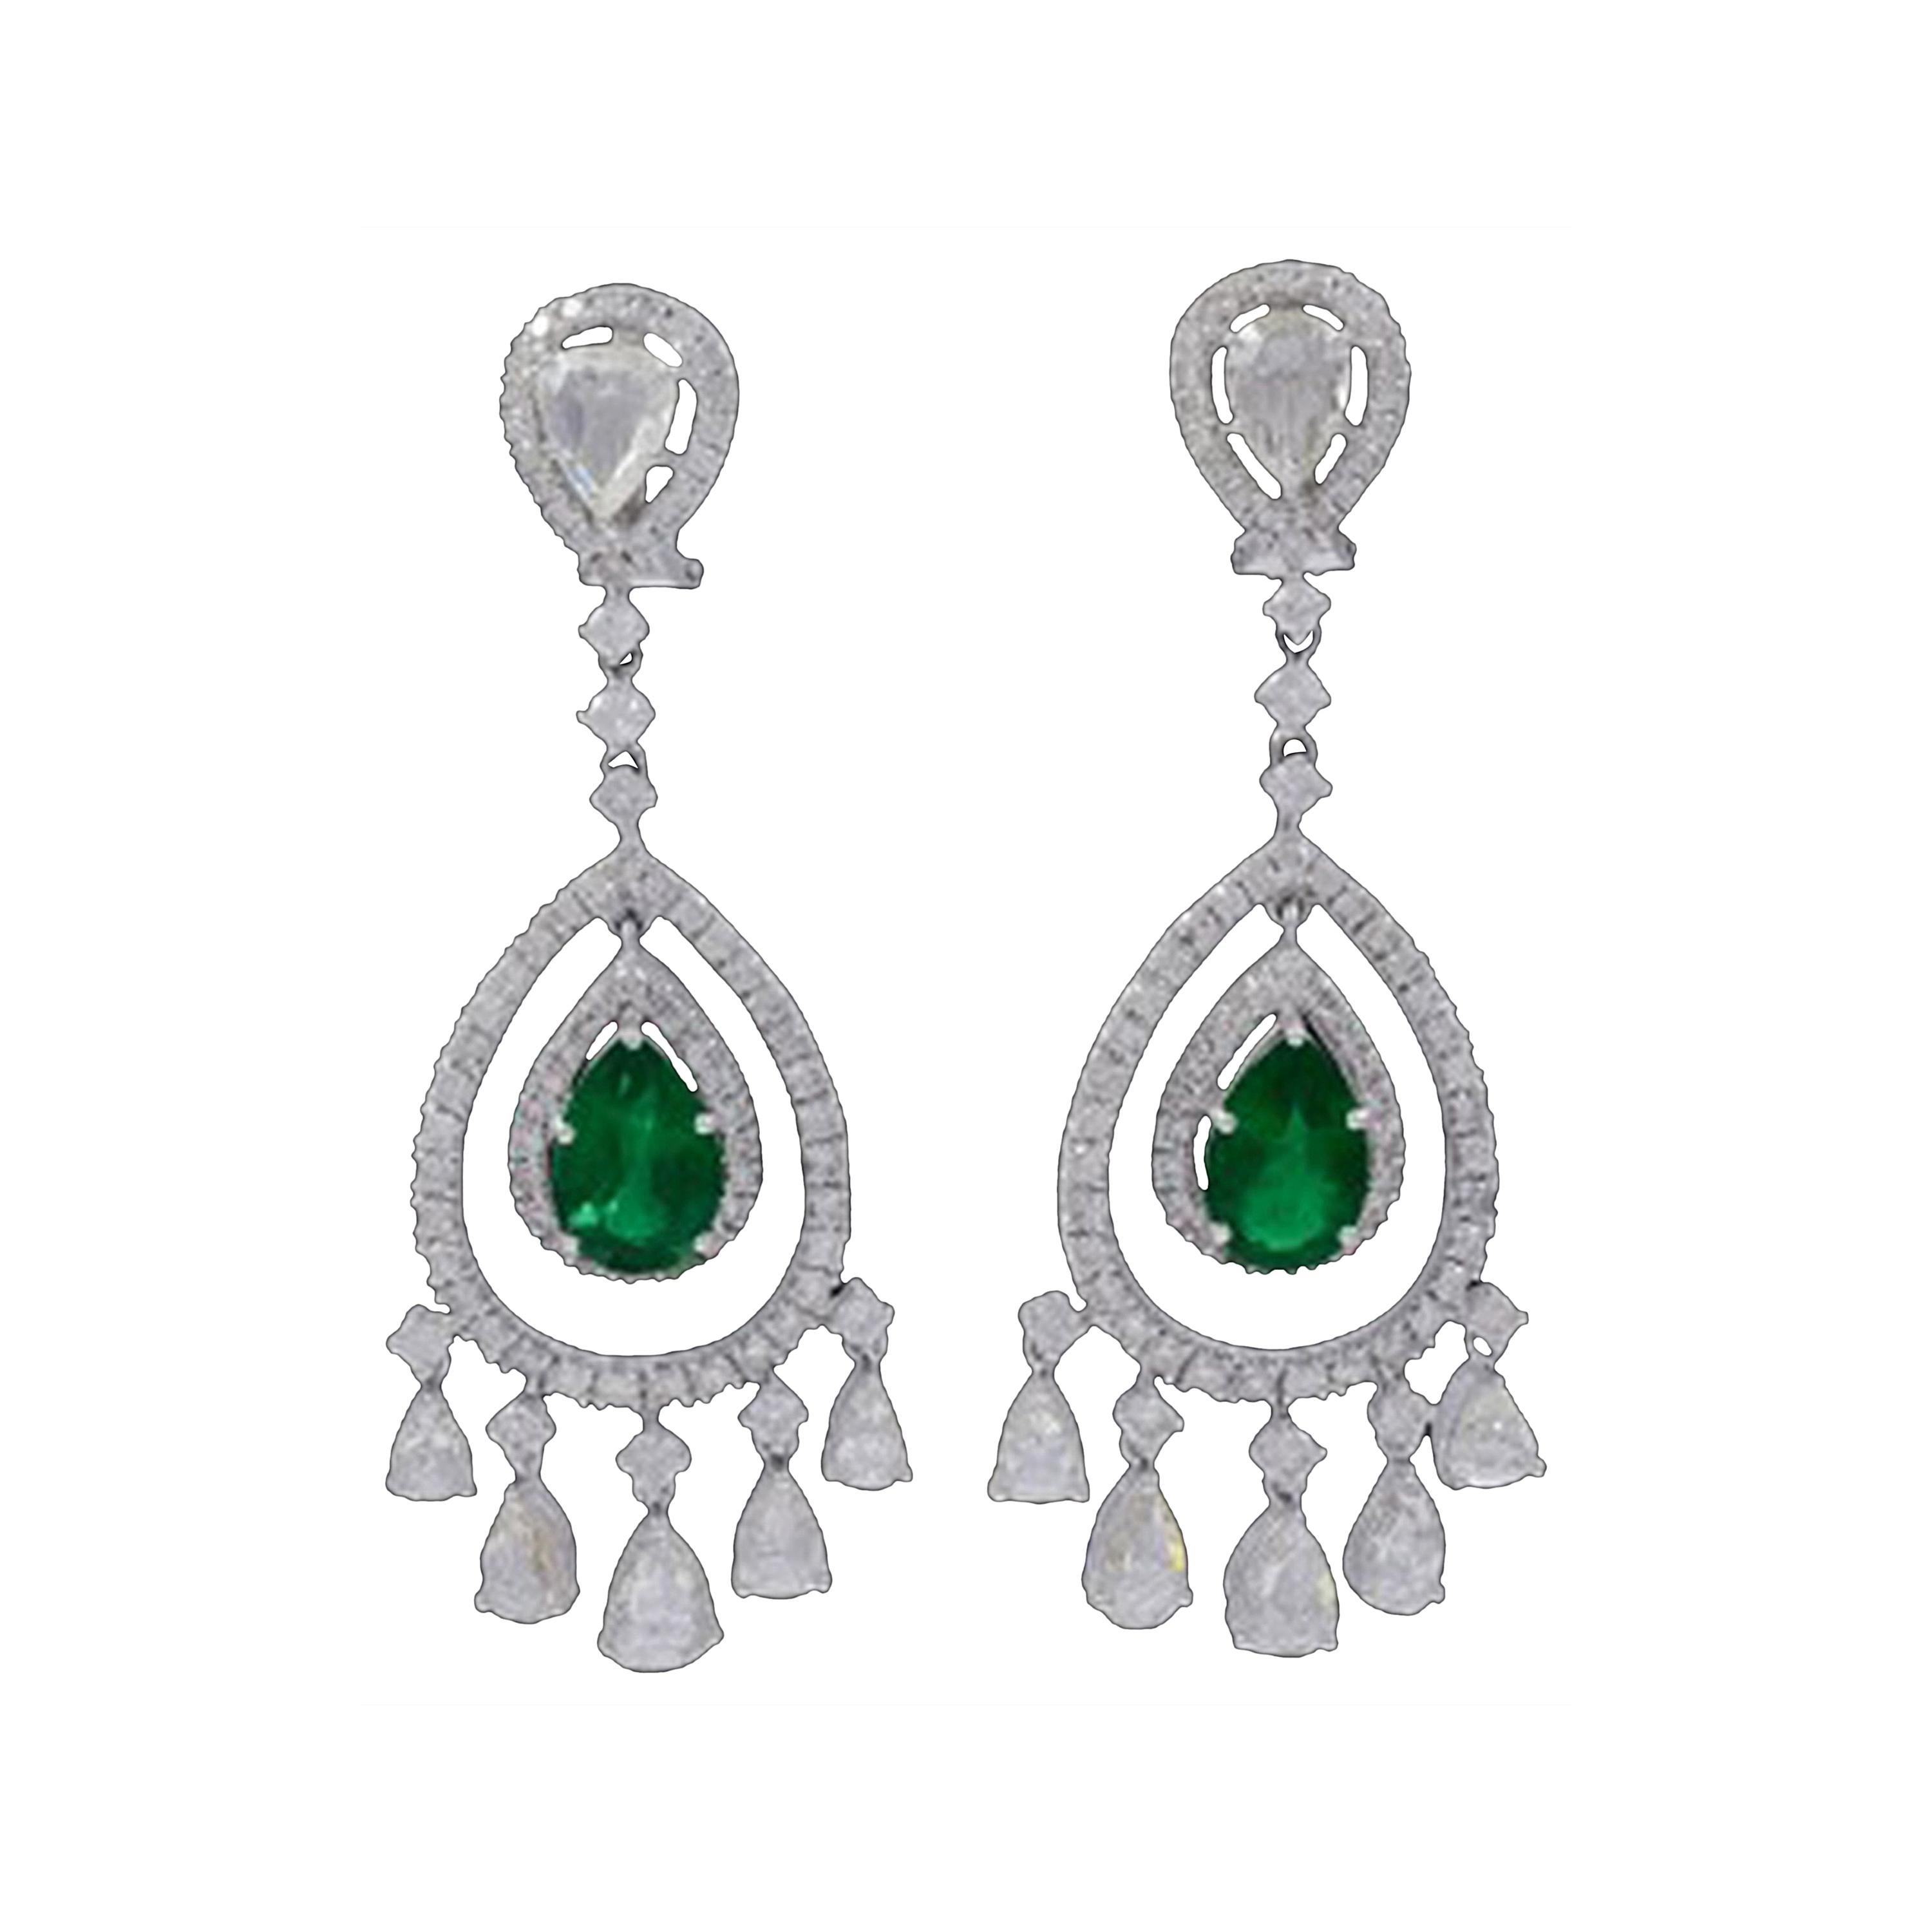 GIA Certified 6.5Ct Zambian Pear Emerald Diamond Hanging/Drop Earrings 18KW Gold